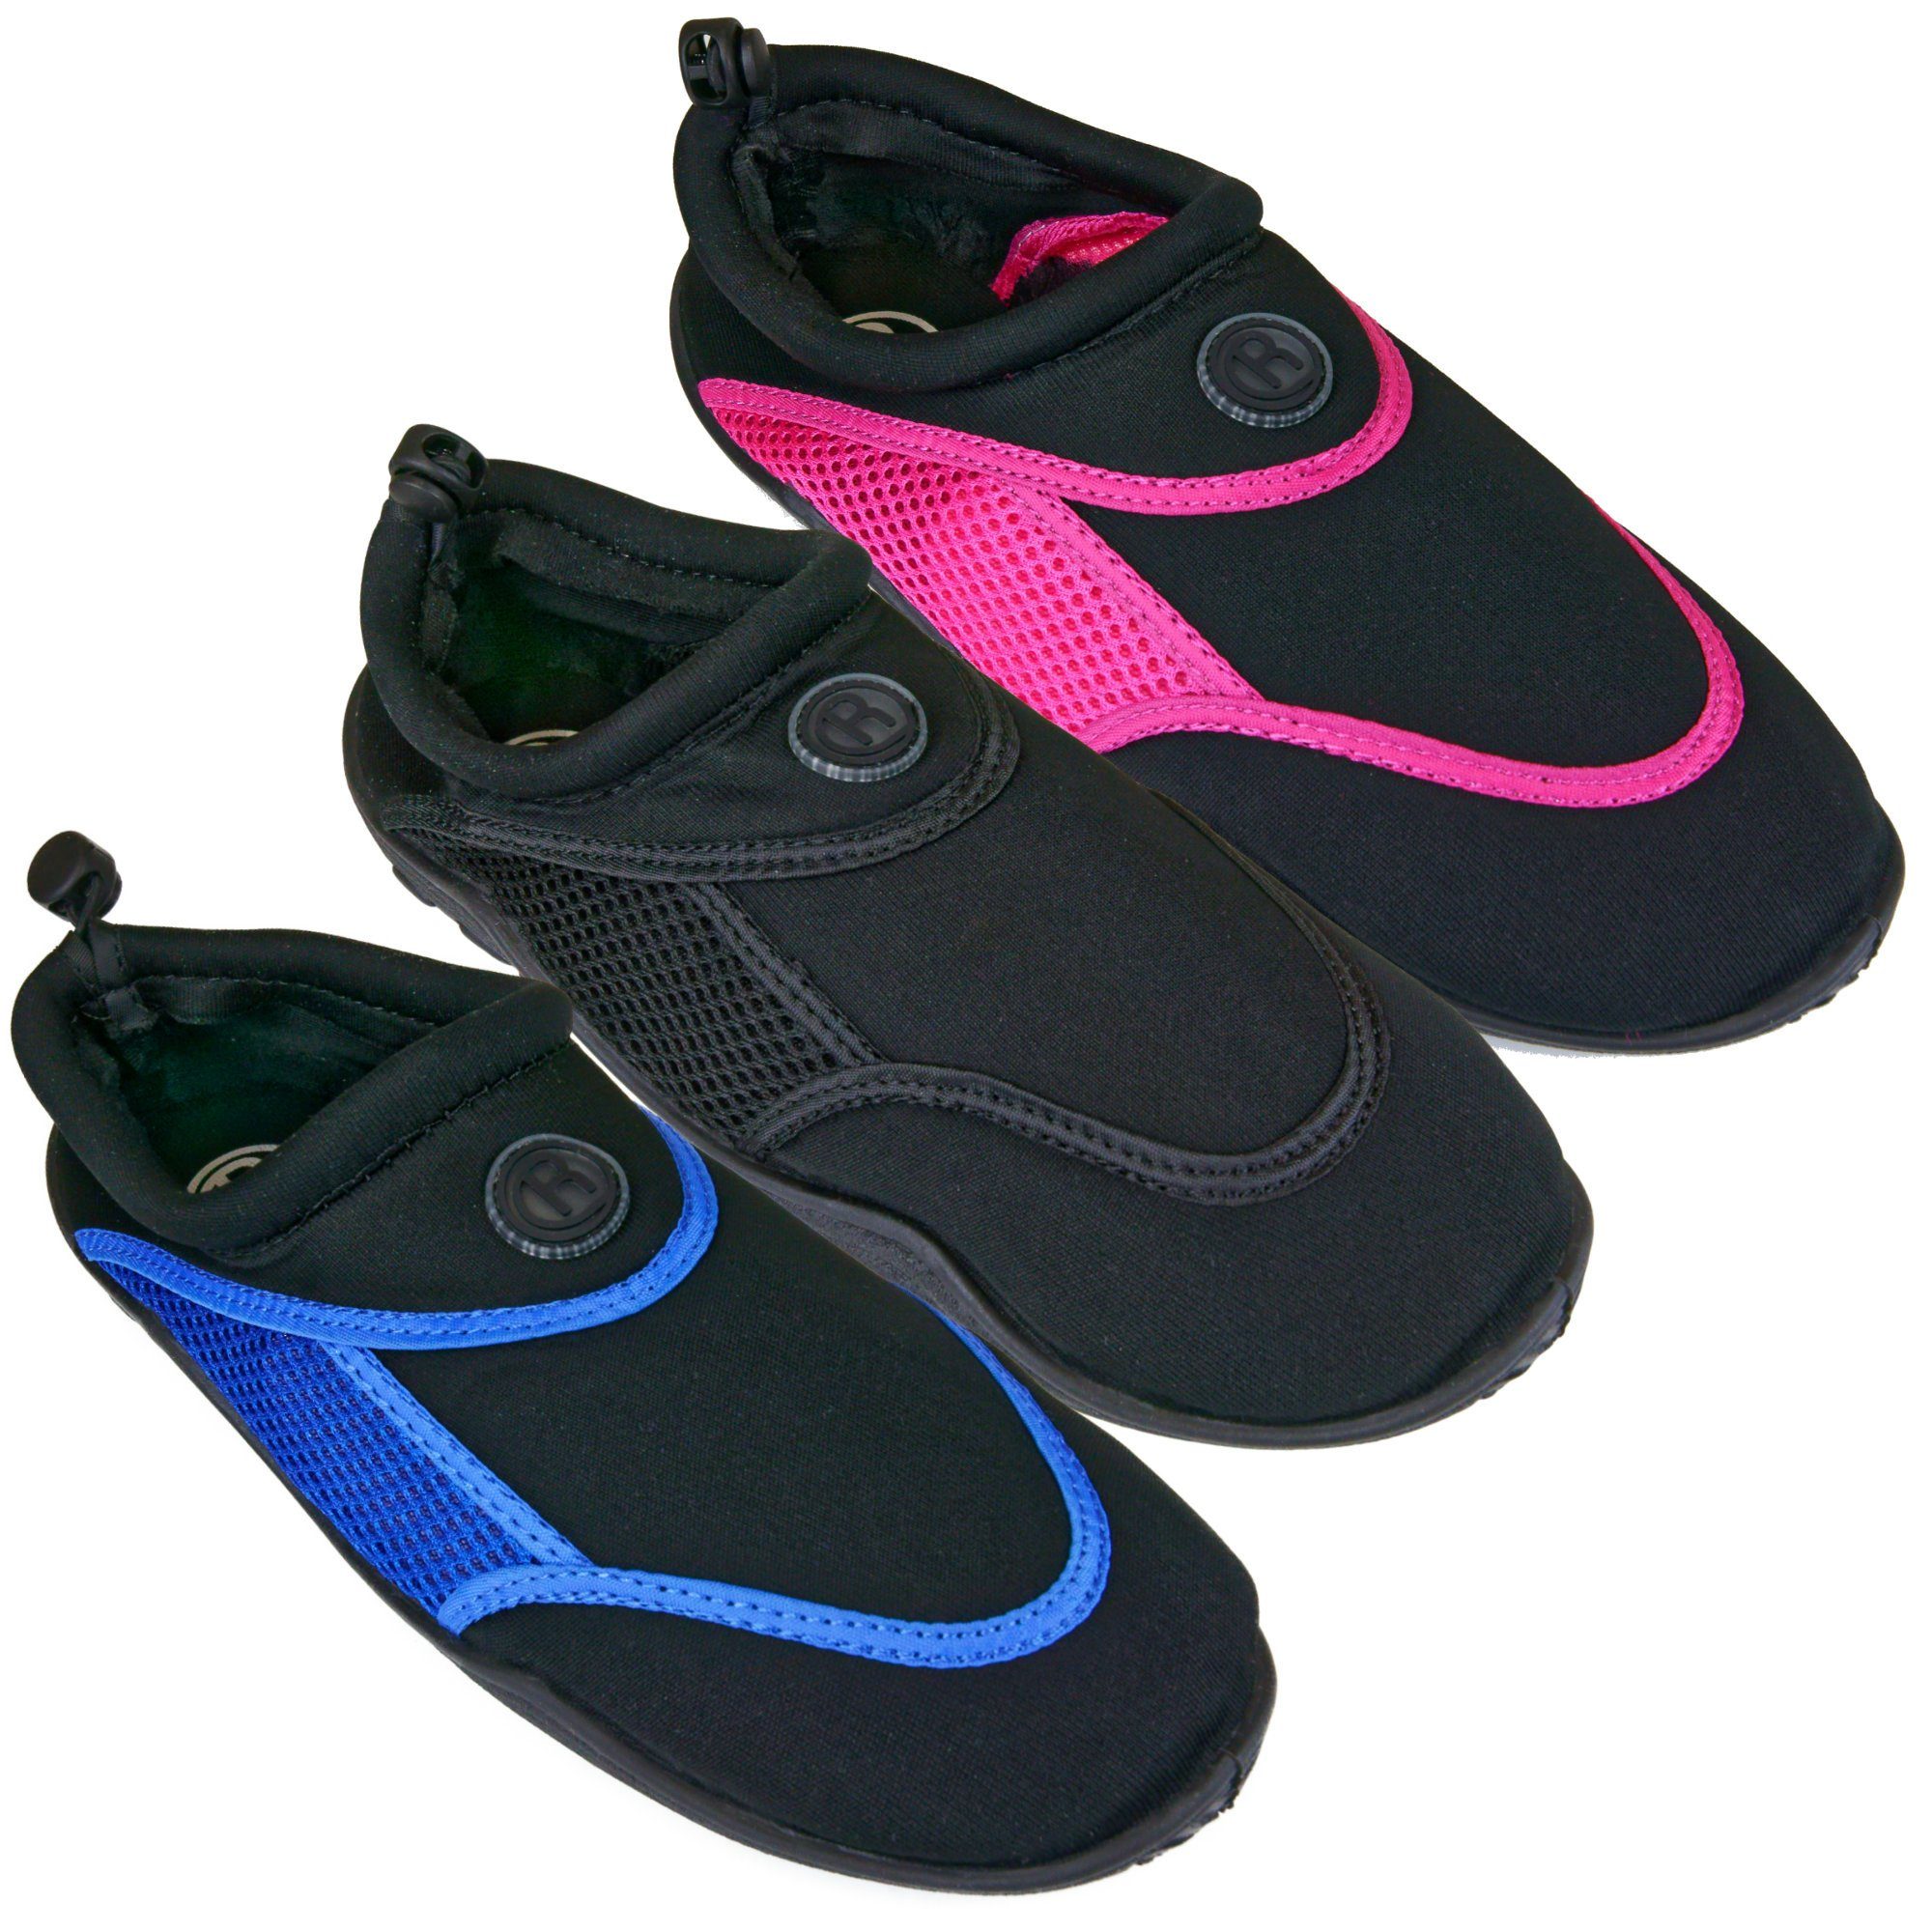 Aqua-Schuhe Pink/Black Badeschuh / Rutscherlebnis Surf-Schuhe